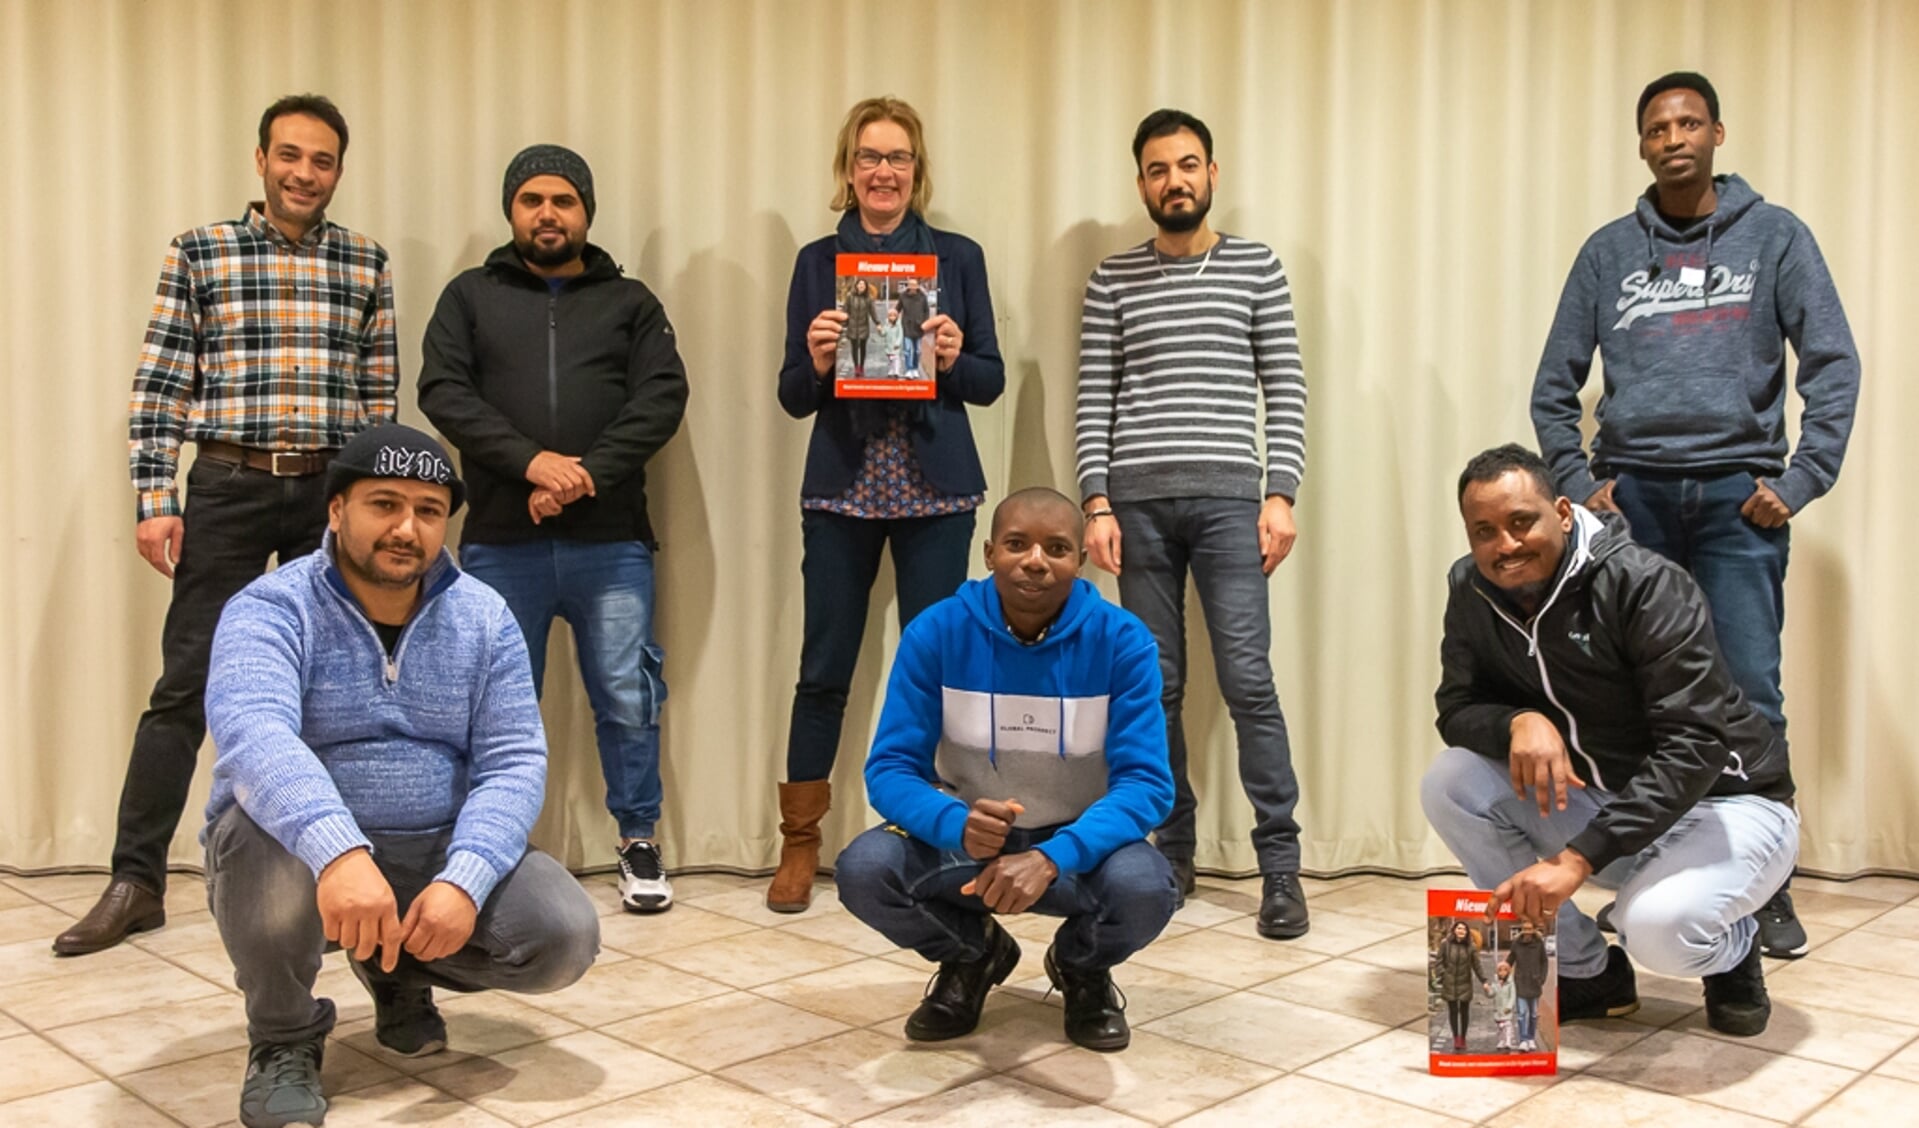 VluchtelingenWerk heeft het eerste exemplaar van het interview-bundeltje 'Nieuwe Buren' officieel overhandigd aan wethouder Luciënne Boelsma 